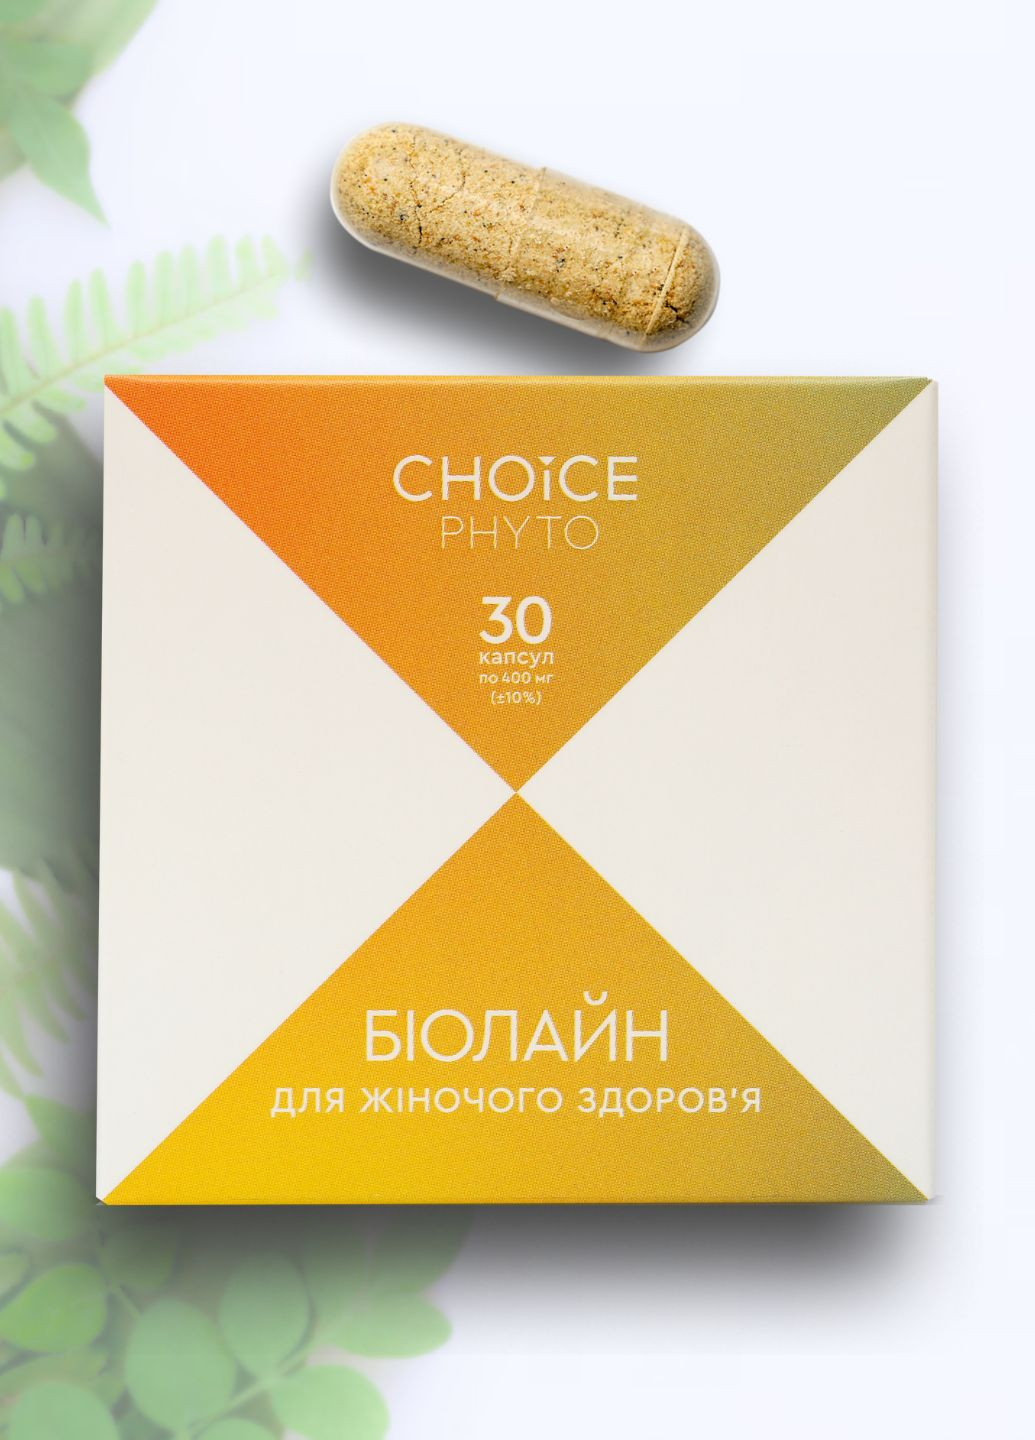 Биолайн - для женского здоровья фитокомплекс PHYTO Чойс (30 капсул) CHOICE (264647275)